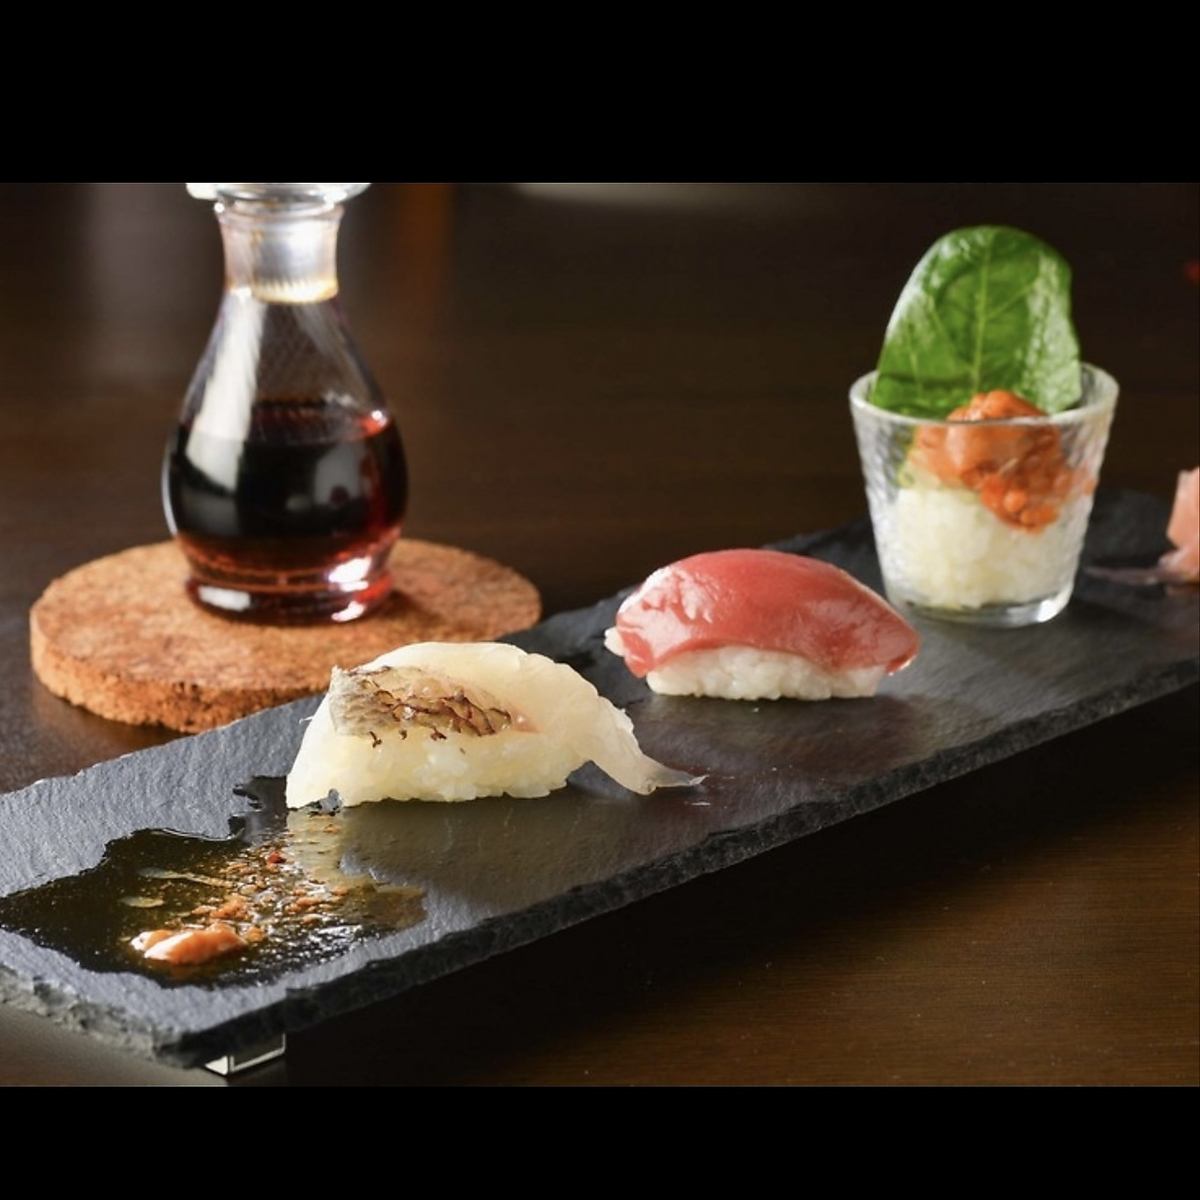 使用原汁原味的菜餚、清酒和現場食材製作的原味日本料理